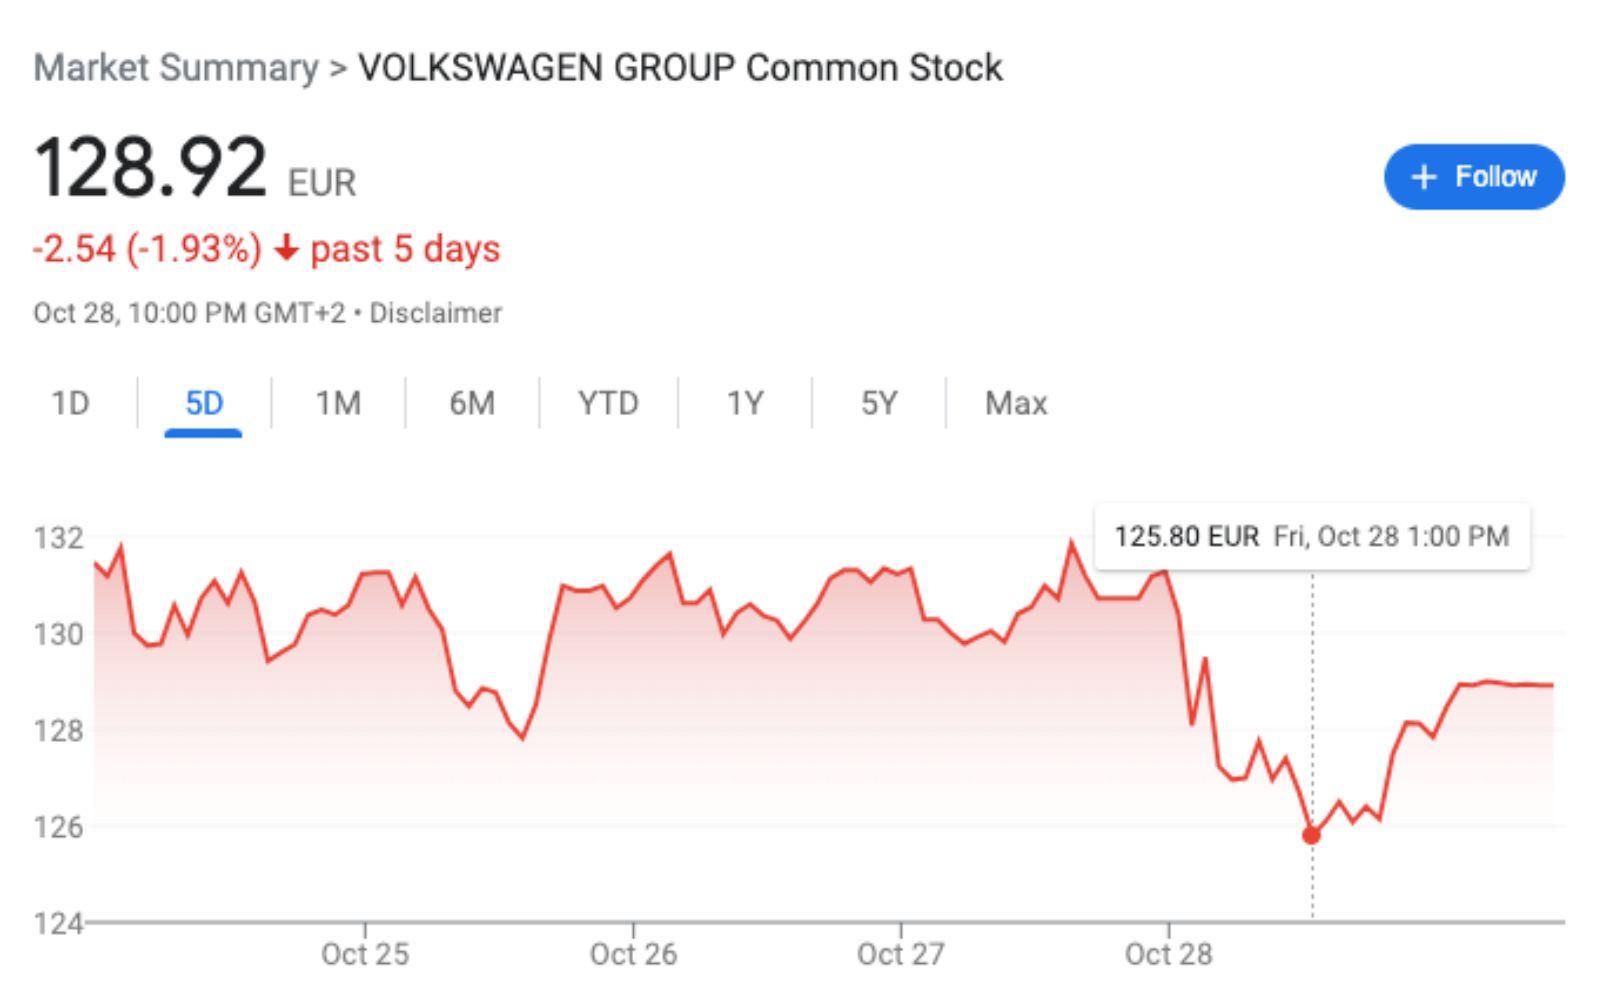 VW stock